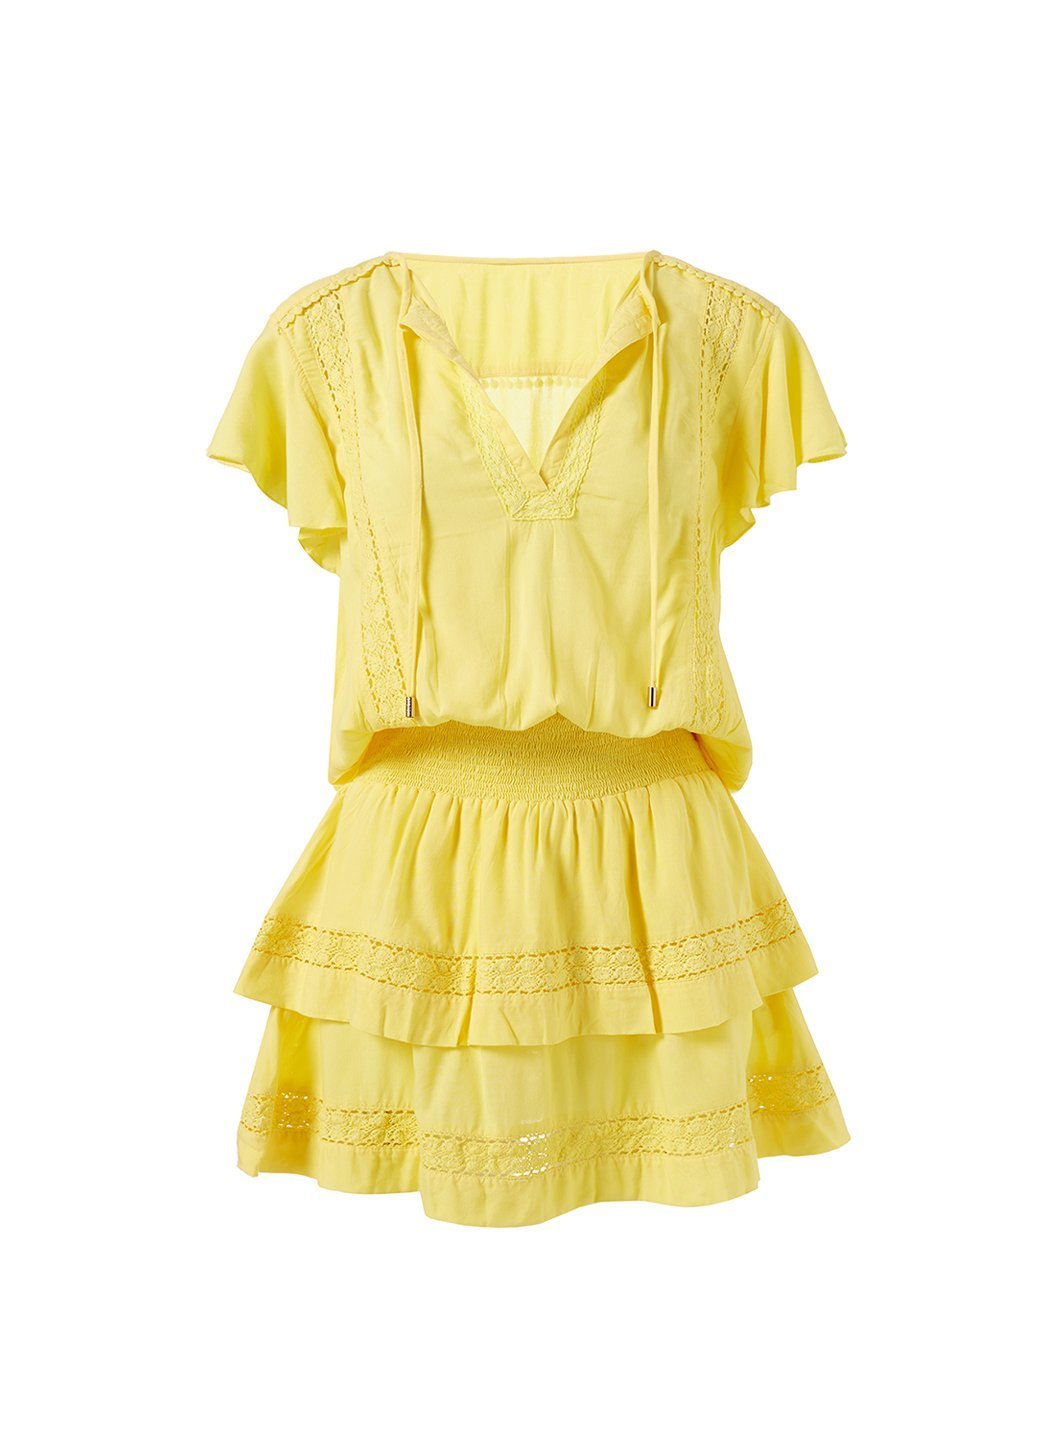 Melissa Odabash Georgie Yellow Tiered Skirt Short Dress | Official Website